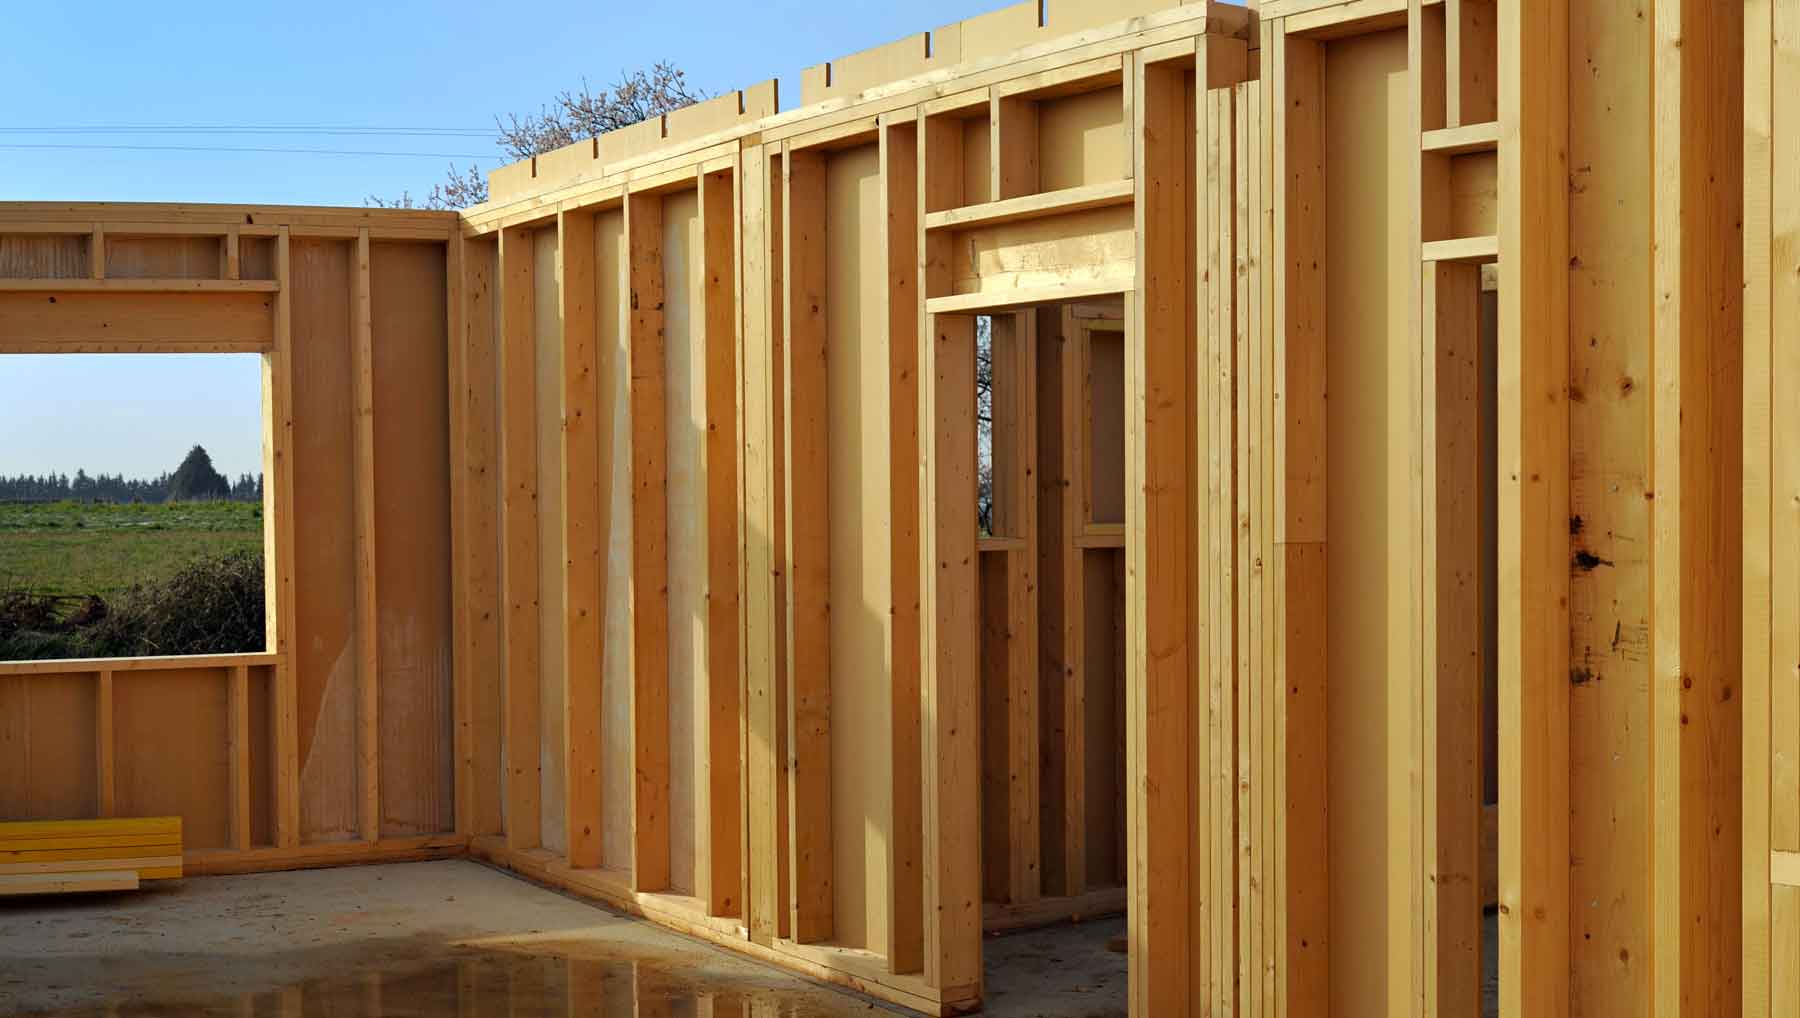 Ossature en bois composée de murs en bois